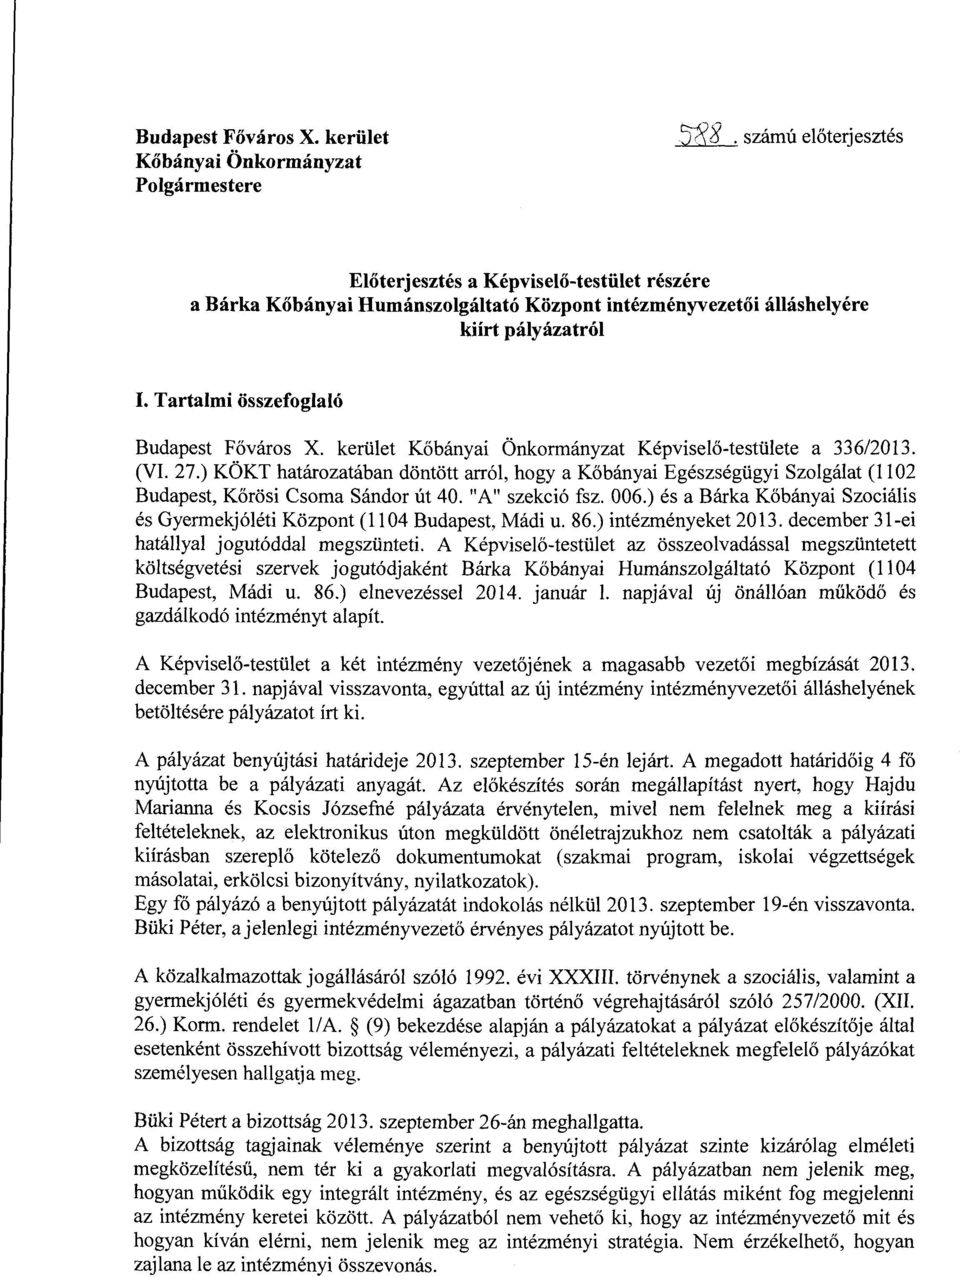 kerület Kőbányai Önkormányzat Képviselő-testülete a 336/2013. (VI. 27.) KÖKT határozatában döntött arról, hogy a Kőbányai Egészségügyi Szolgálat (1102 Budapest, Körösi Csoma Sándor út 40.